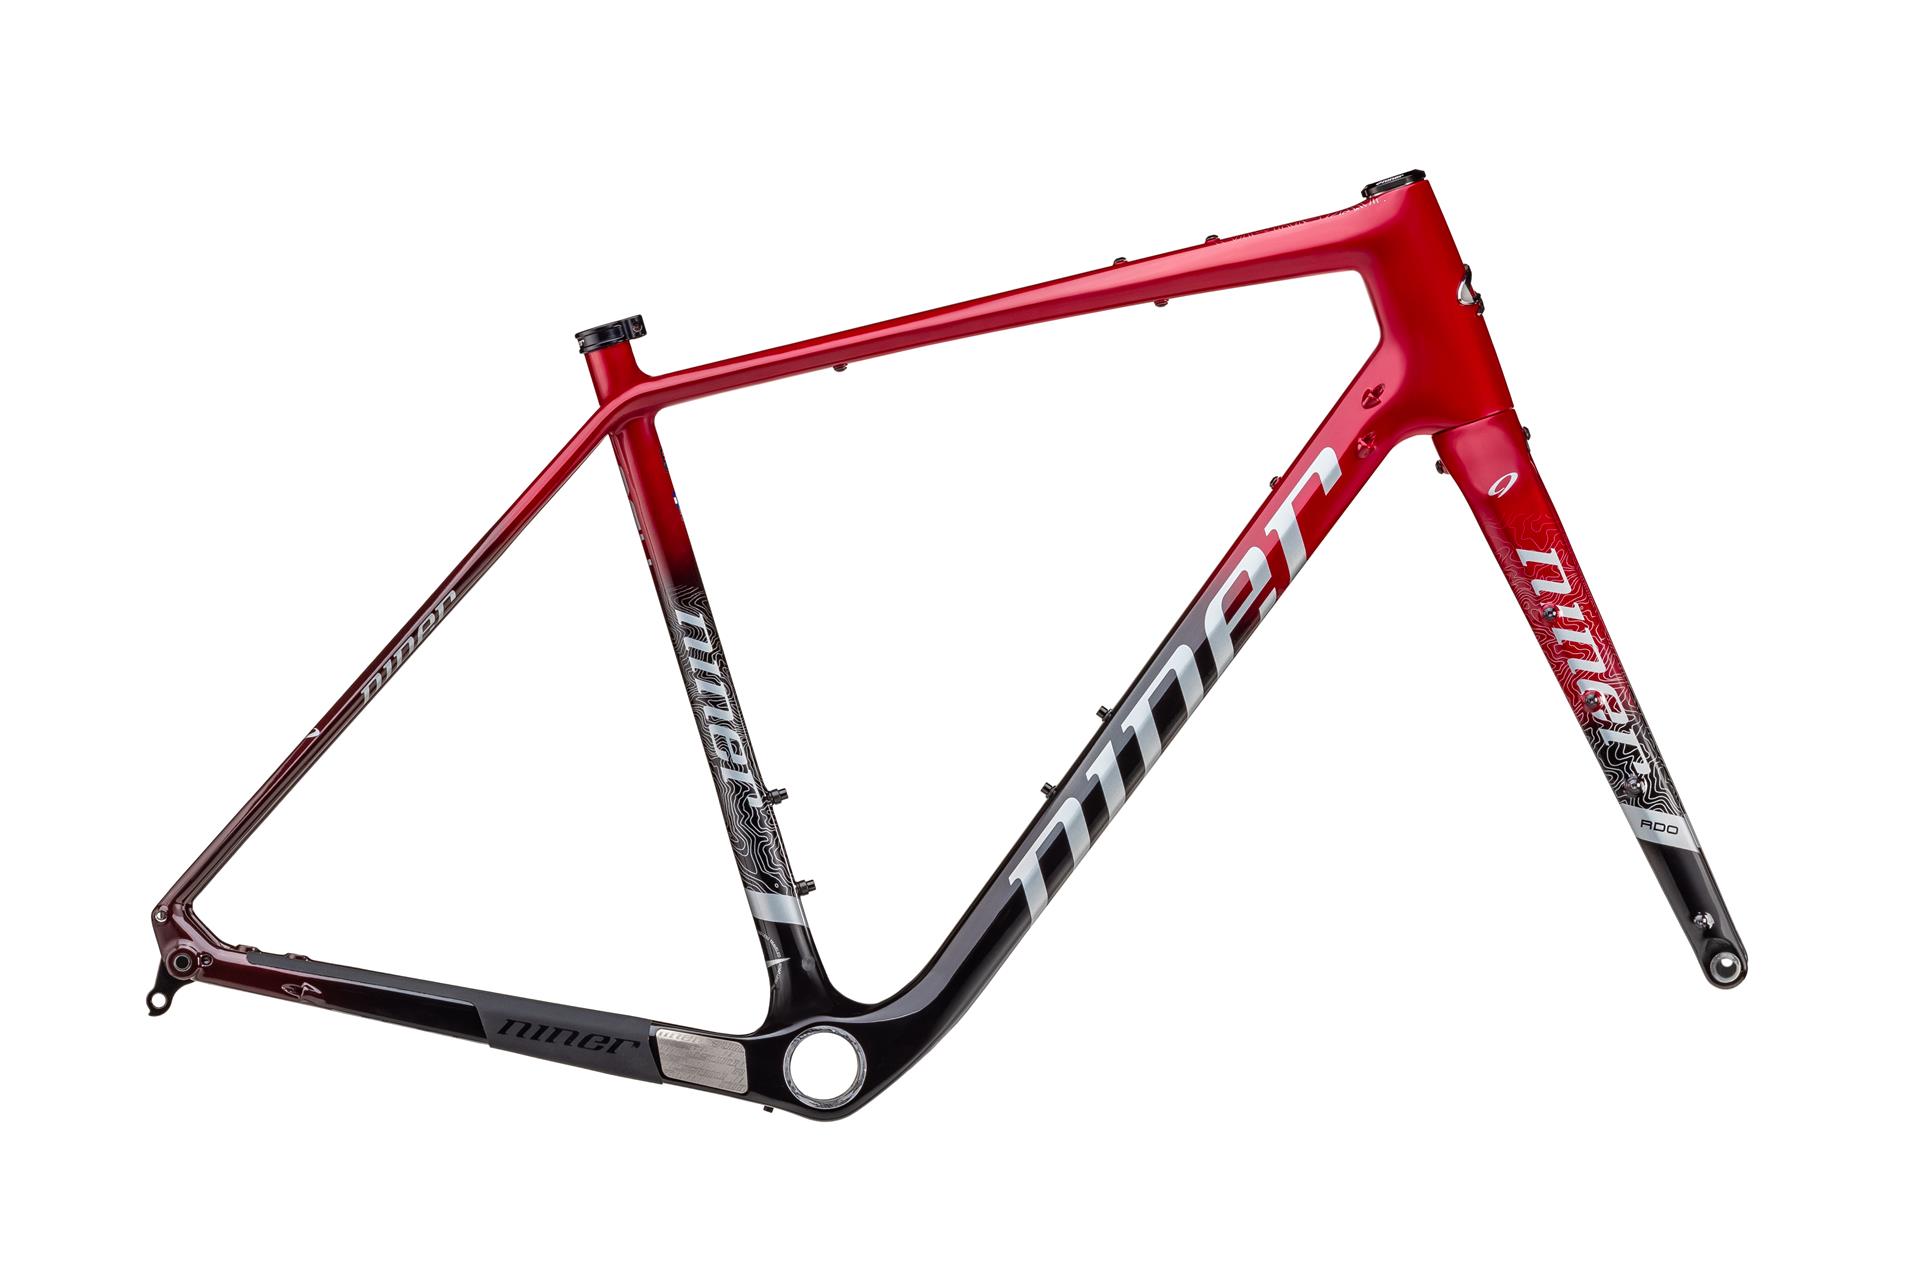 Niner RLT RDO 2-star велосипед, кроваво-красный, 53